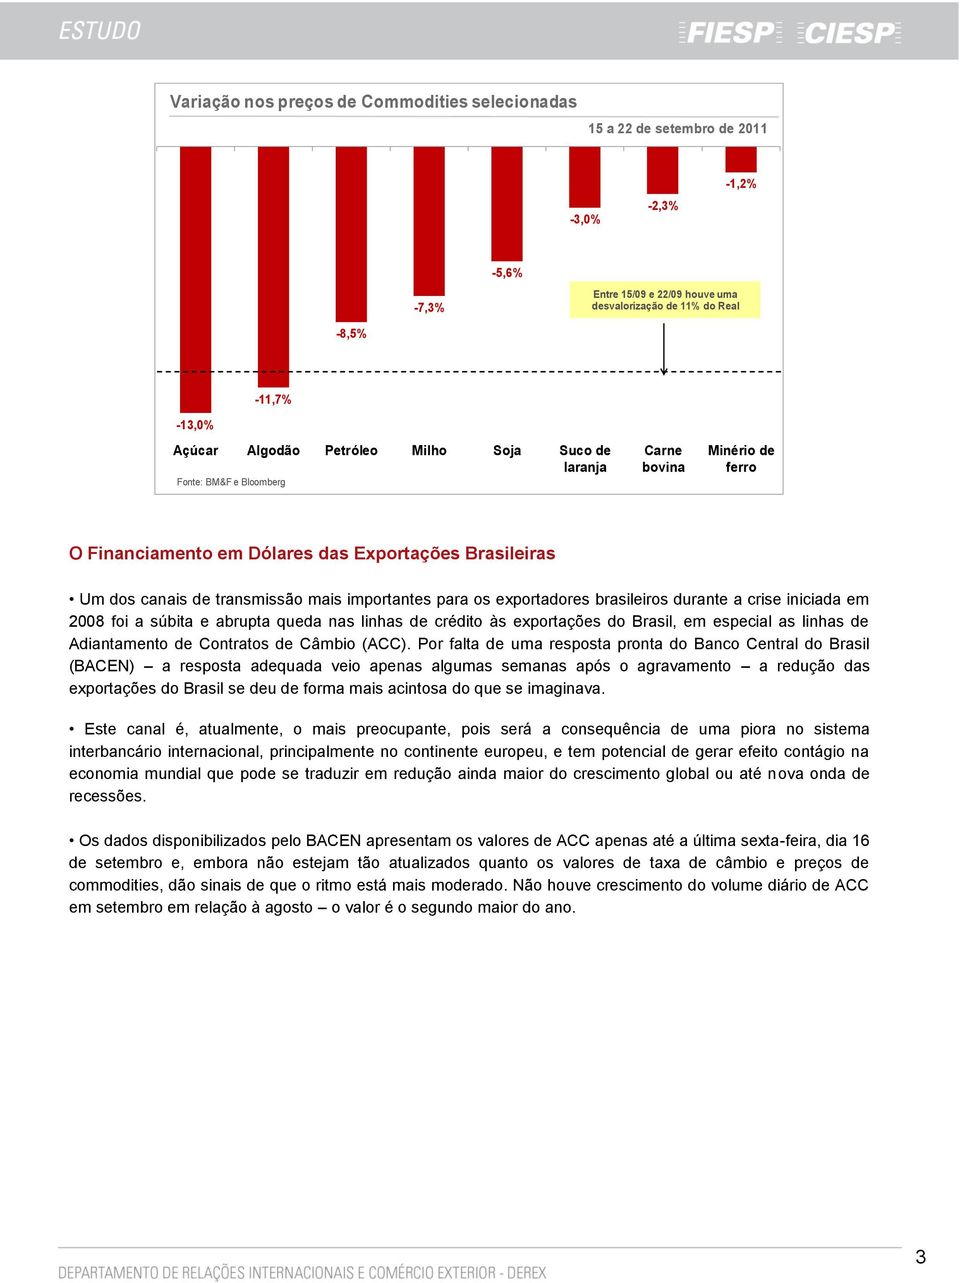 exportadores brasileiros durante a crise iniciada em 2008 foi a súbita e abrupta queda nas linhas de crédito às exportações do Brasil, em especial as linhas de Adiantamento de Contratos de Câmbio